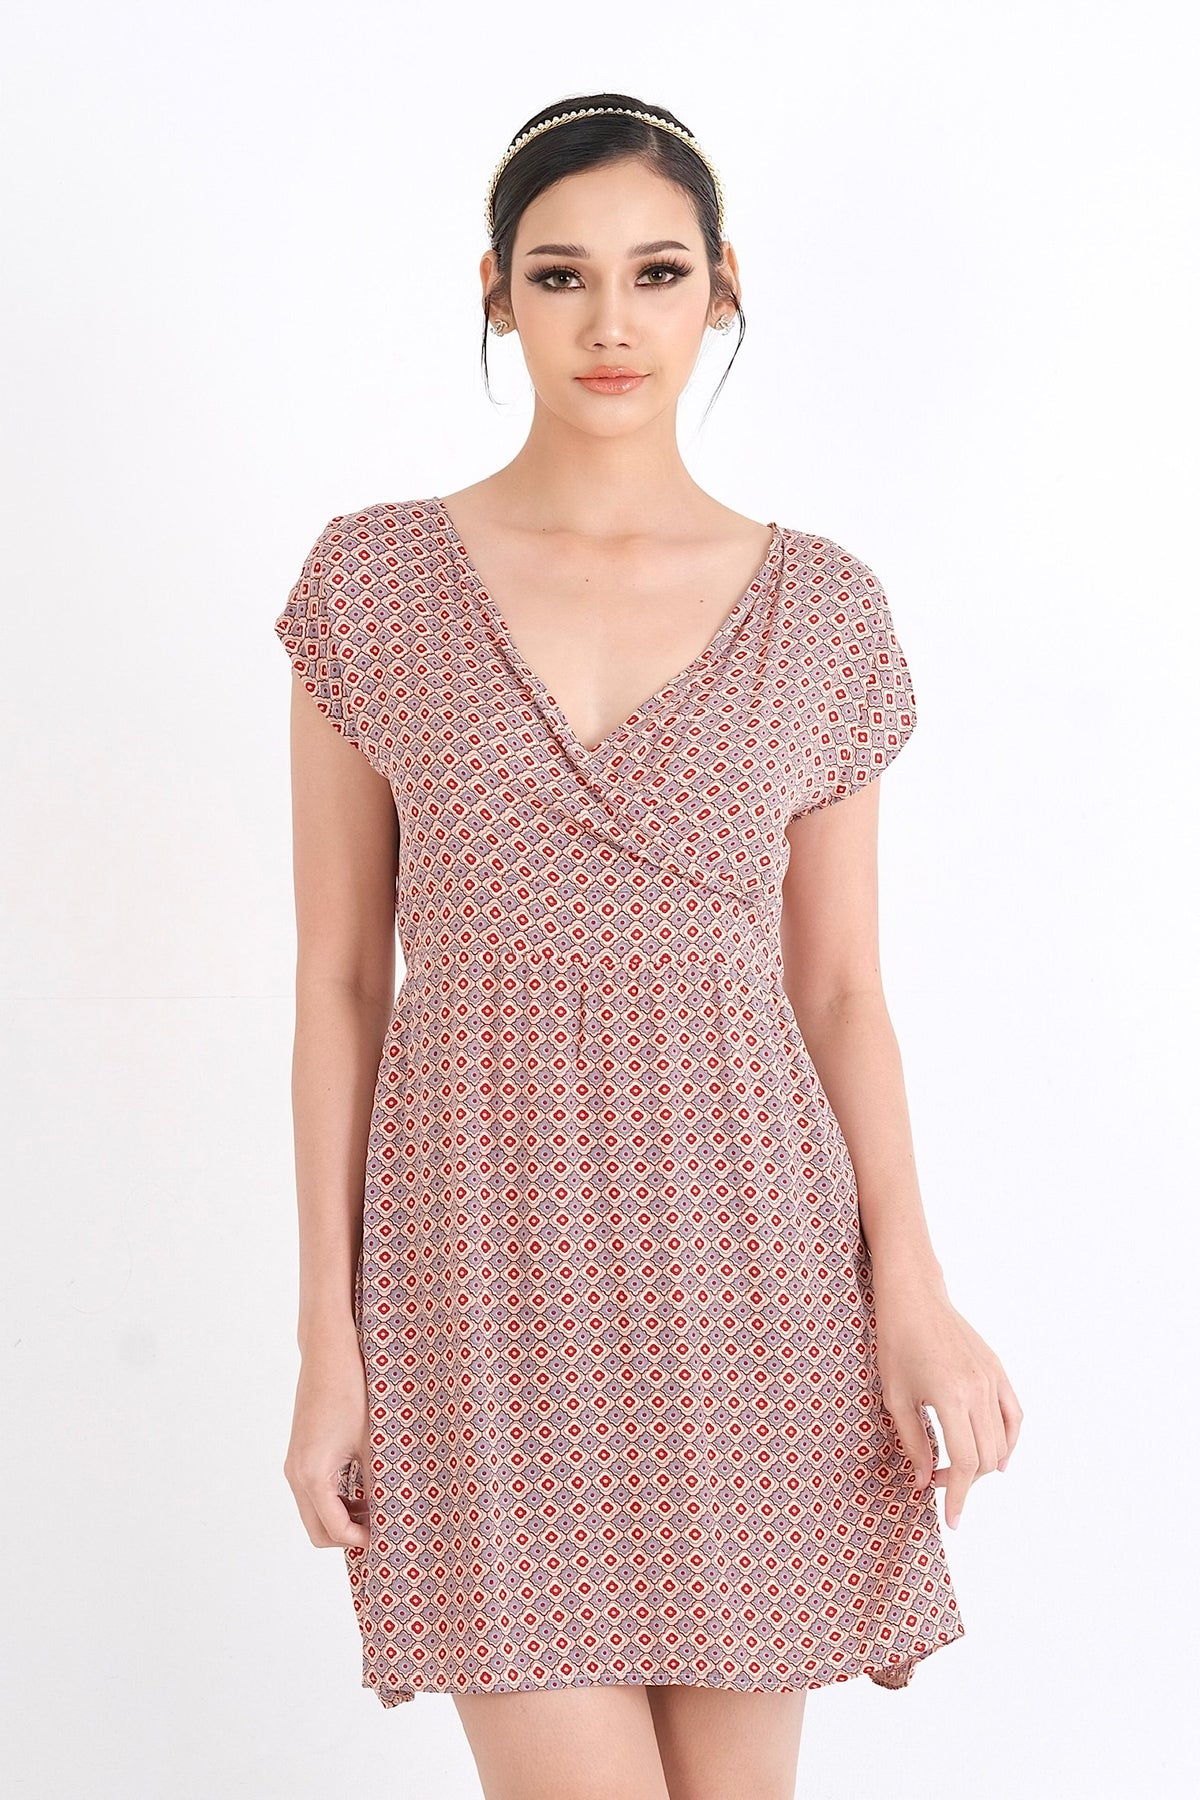 Élégance et confort se rencontrent dans cette robe en viscose, parfaite pour l'été. Disponible en ligne au Québec, trouvez votre taille idéale du XS au XXL pour un style sans effort.